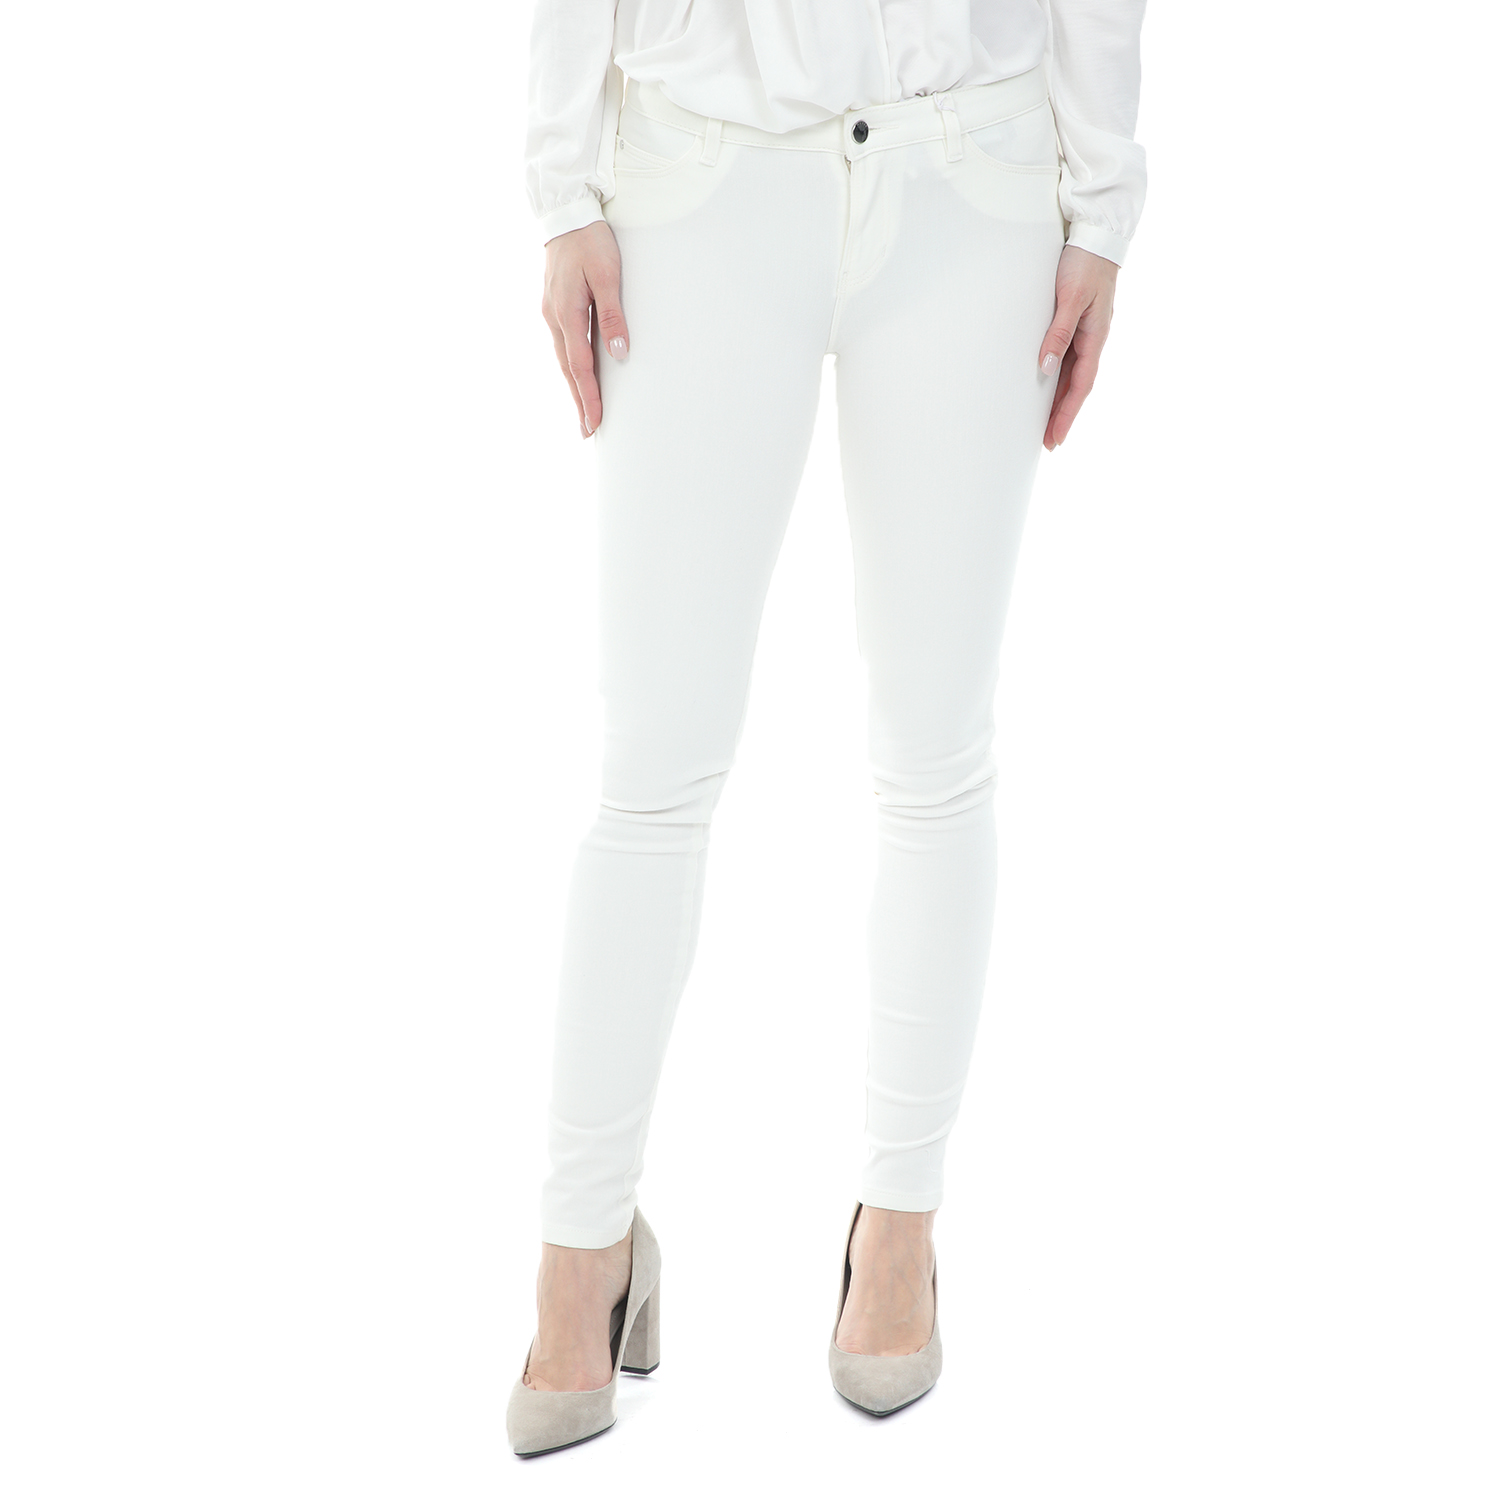 Γυναικεία/Ρούχα/Τζίν/Skinny GUESS - Γυναικείο jean παντελόνι GUESS CURVE X λευκό